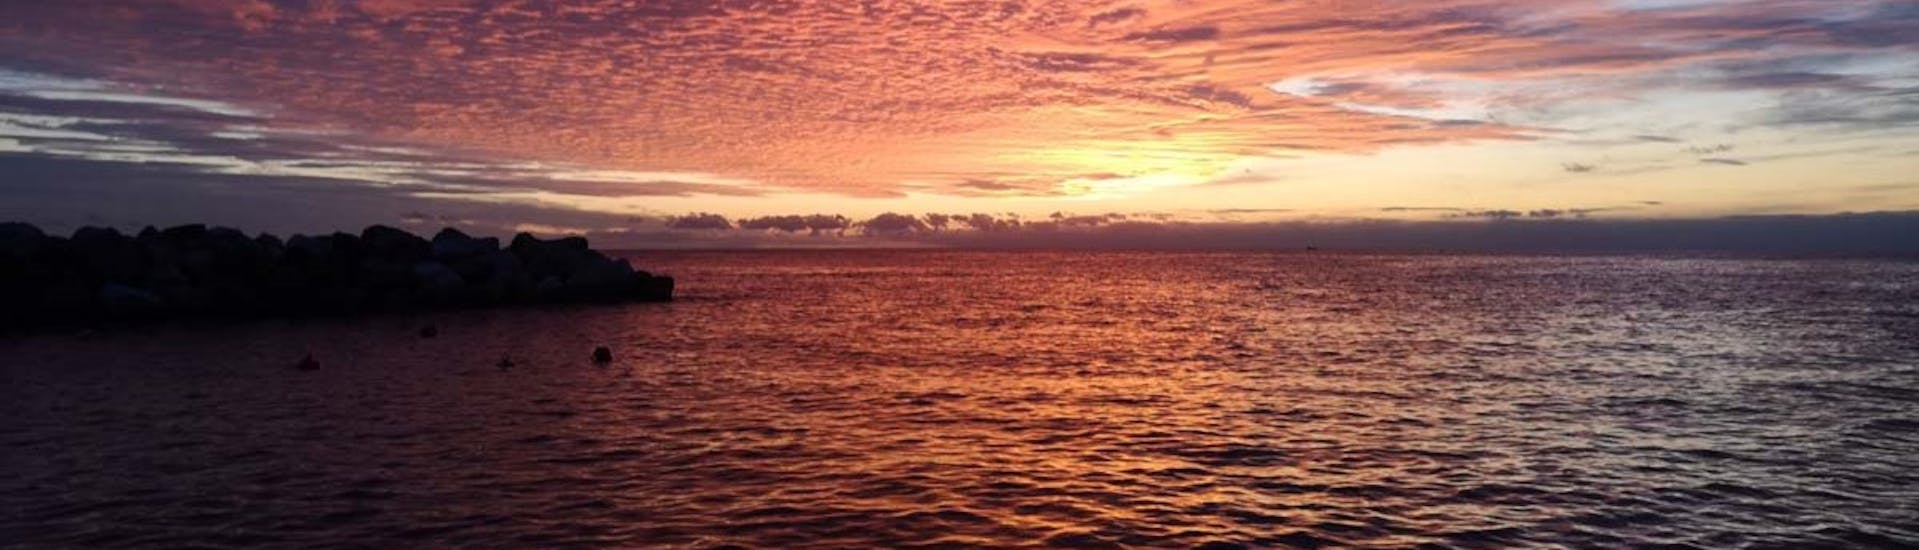 Giro in barca al tramonto da Manarola alle Cinque Terre con aperitivo.